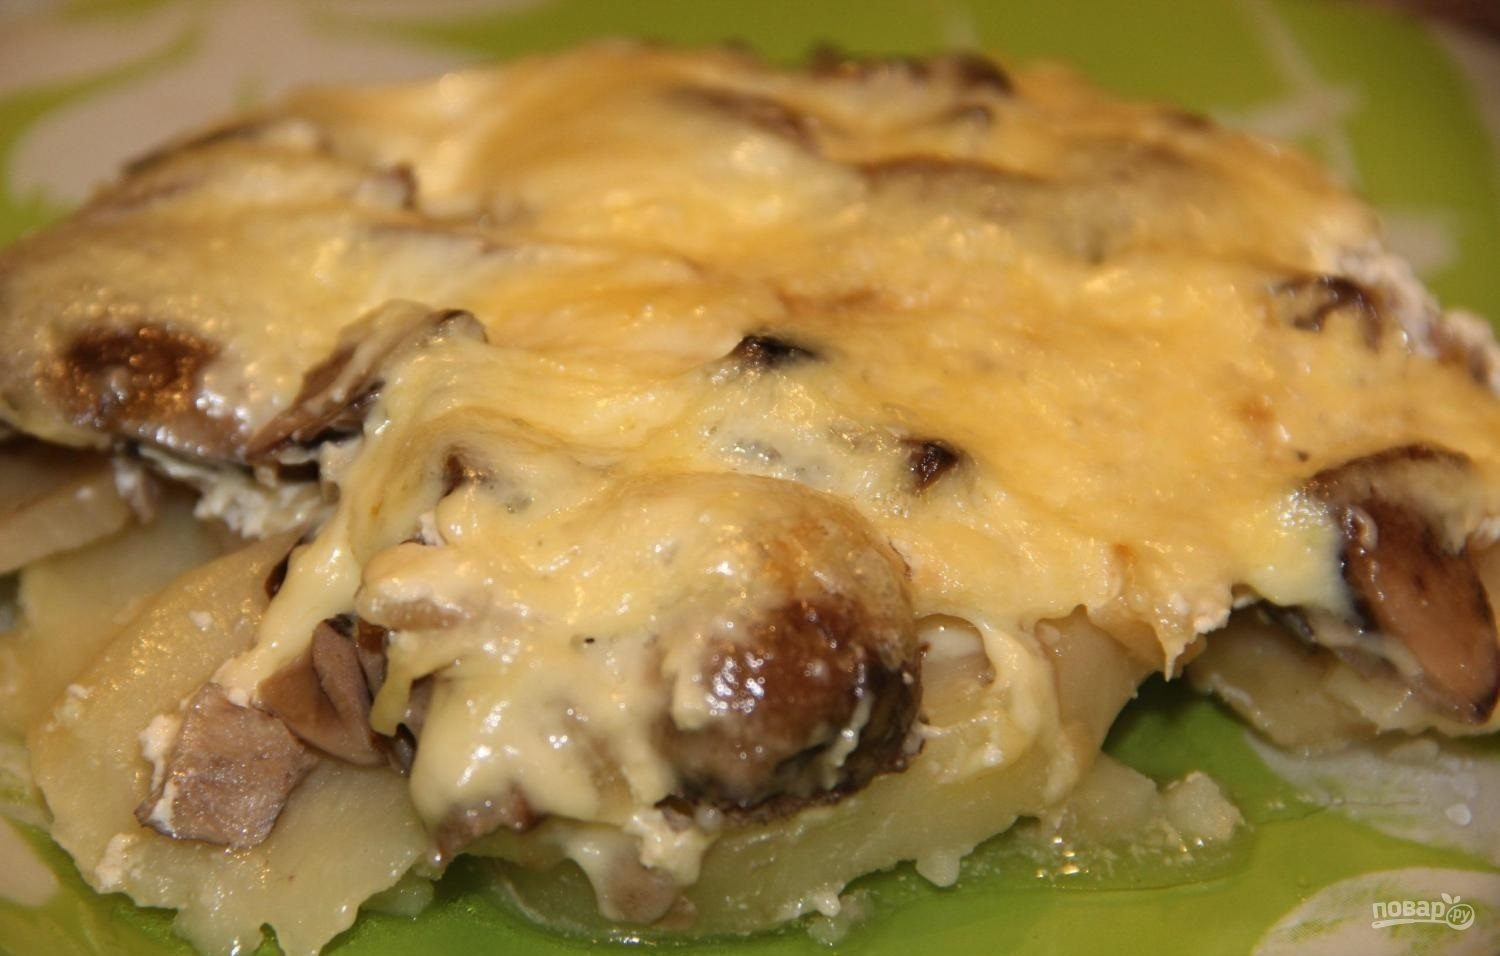 Фарш грибы картофель сыр. Запеченная картошка с грибами и сыром. Картофельная запеканка с грибами и сыром. Картошка с грибами и сыром в духовке. Картошка с шампиньонами и фаршем в духовке.